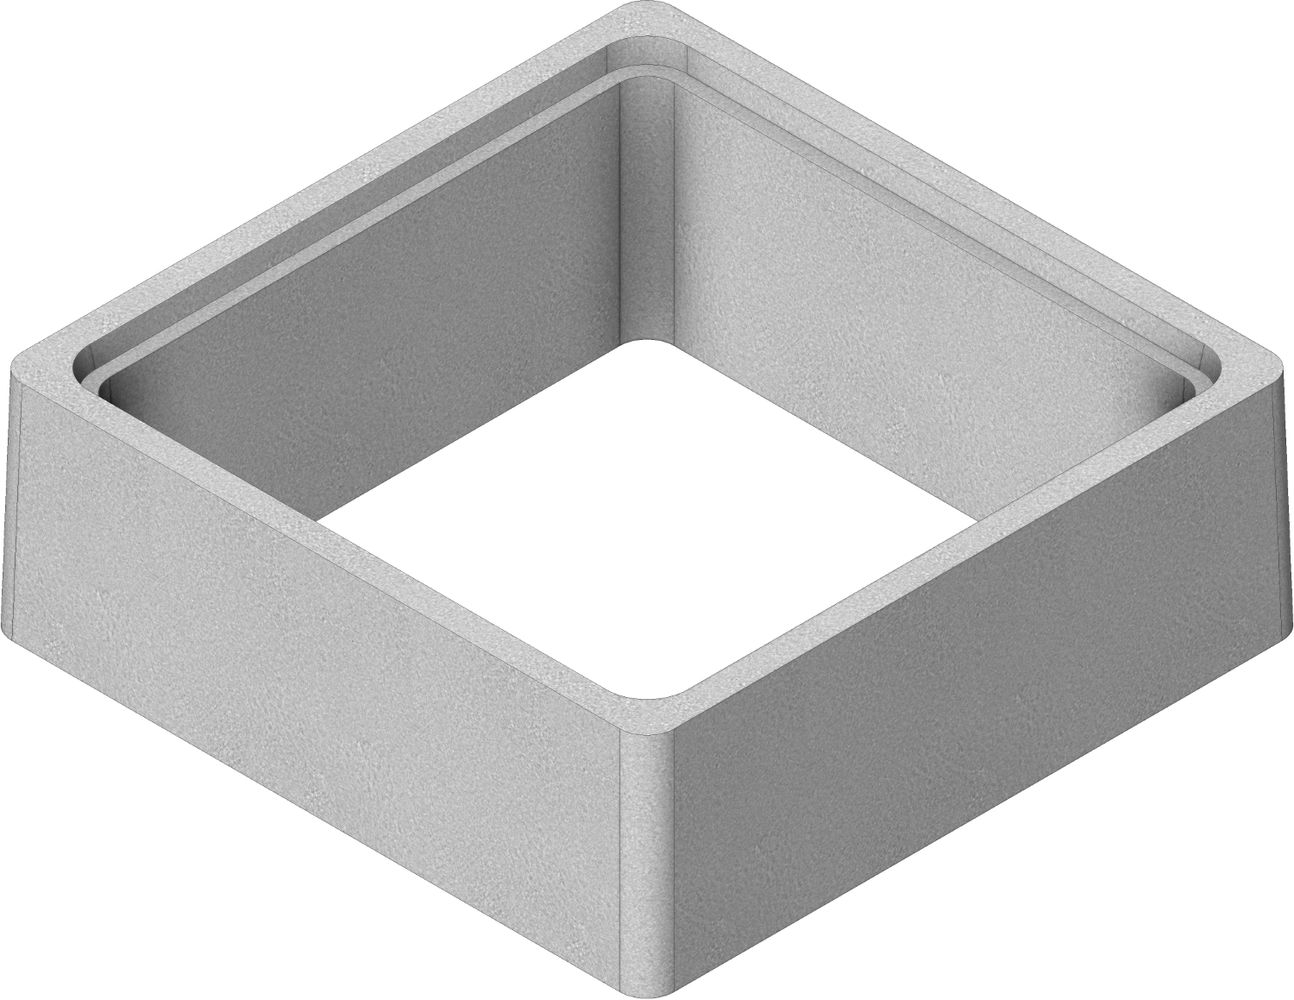 rehausse-beton-boite-branchement-bb50-500x500-h470-thebault-0